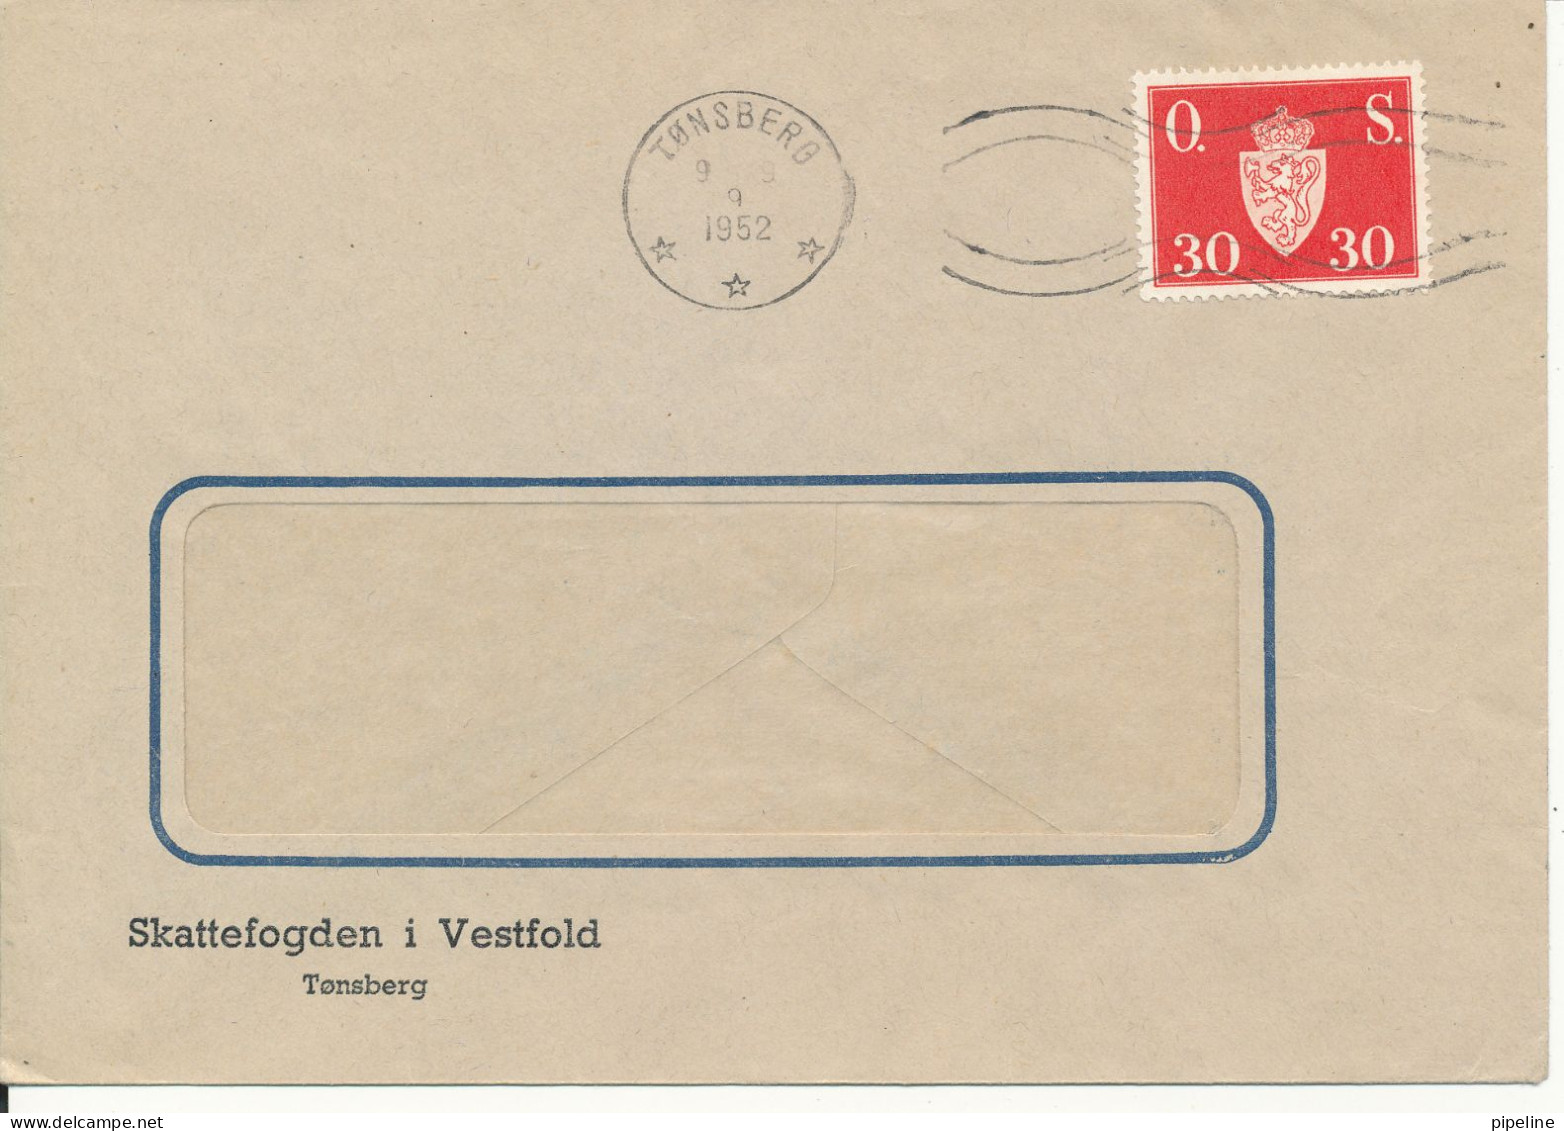 Norway Cover Tönsberg 9-9-1952 (Skattefogden I Vestfold) Single Franked - Briefe U. Dokumente